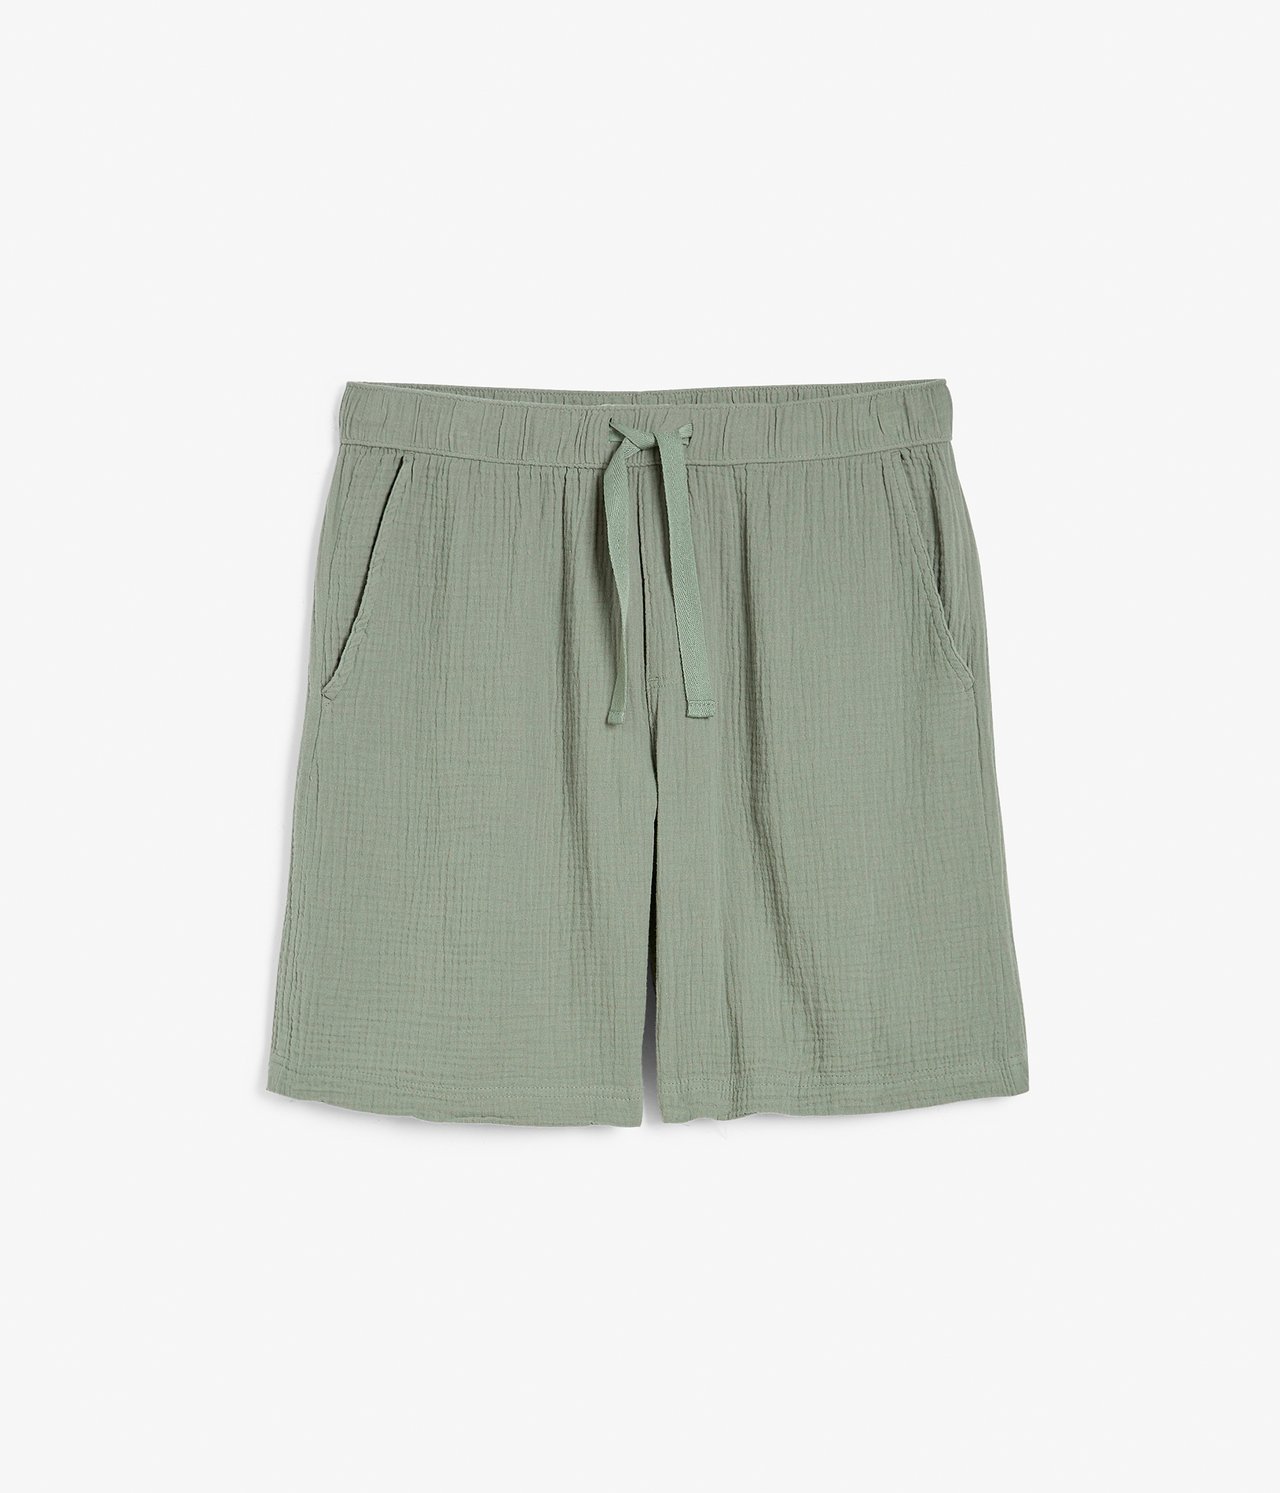 Shorts i rynkete bomull Grønn - null - 3